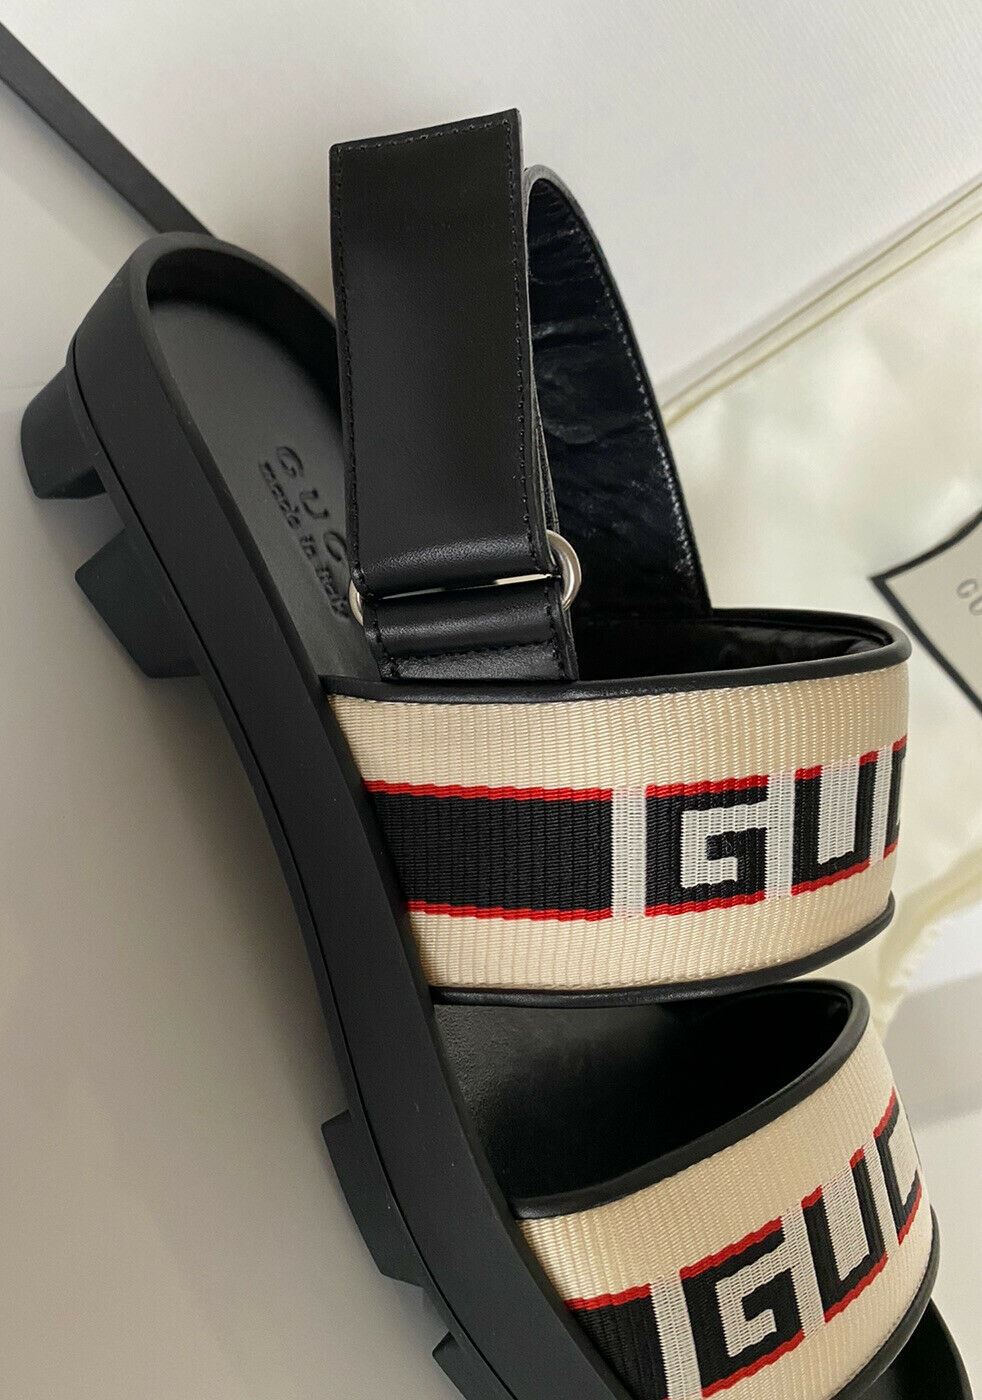 NIB Gucci Мужские черные/белые сандалии из парусины/кожи 10 США (Gucci 9.5), Италия 523769 